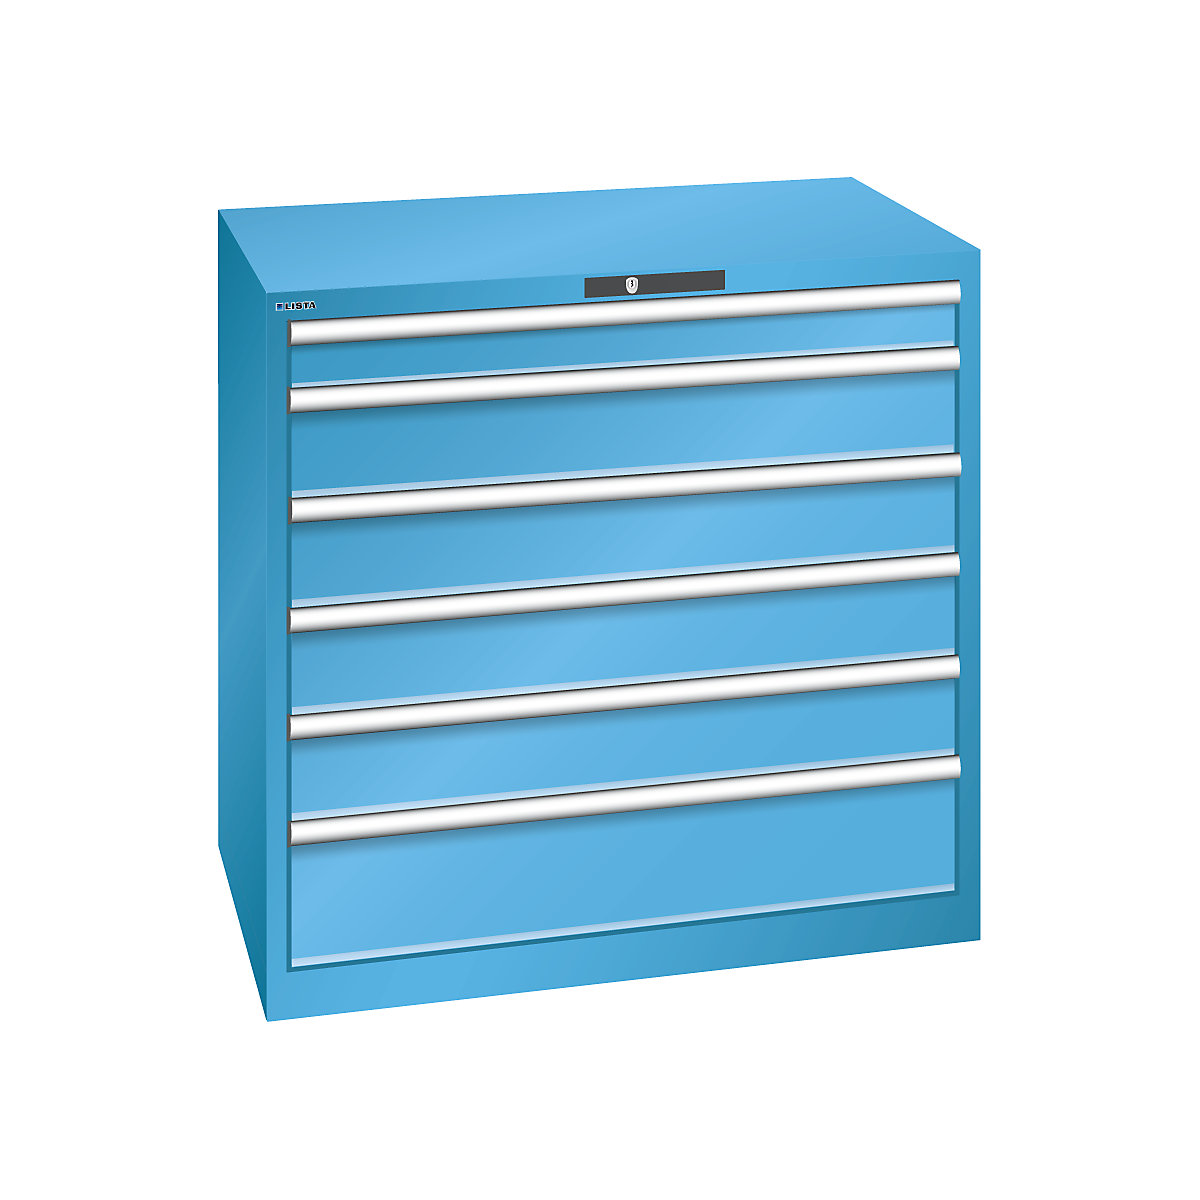 LISTA – Armoire à tiroirs en tôle d'acier, h x l 1000 x 1023 mm, 6 tiroirs, charge max. 200 kg, bleu clair